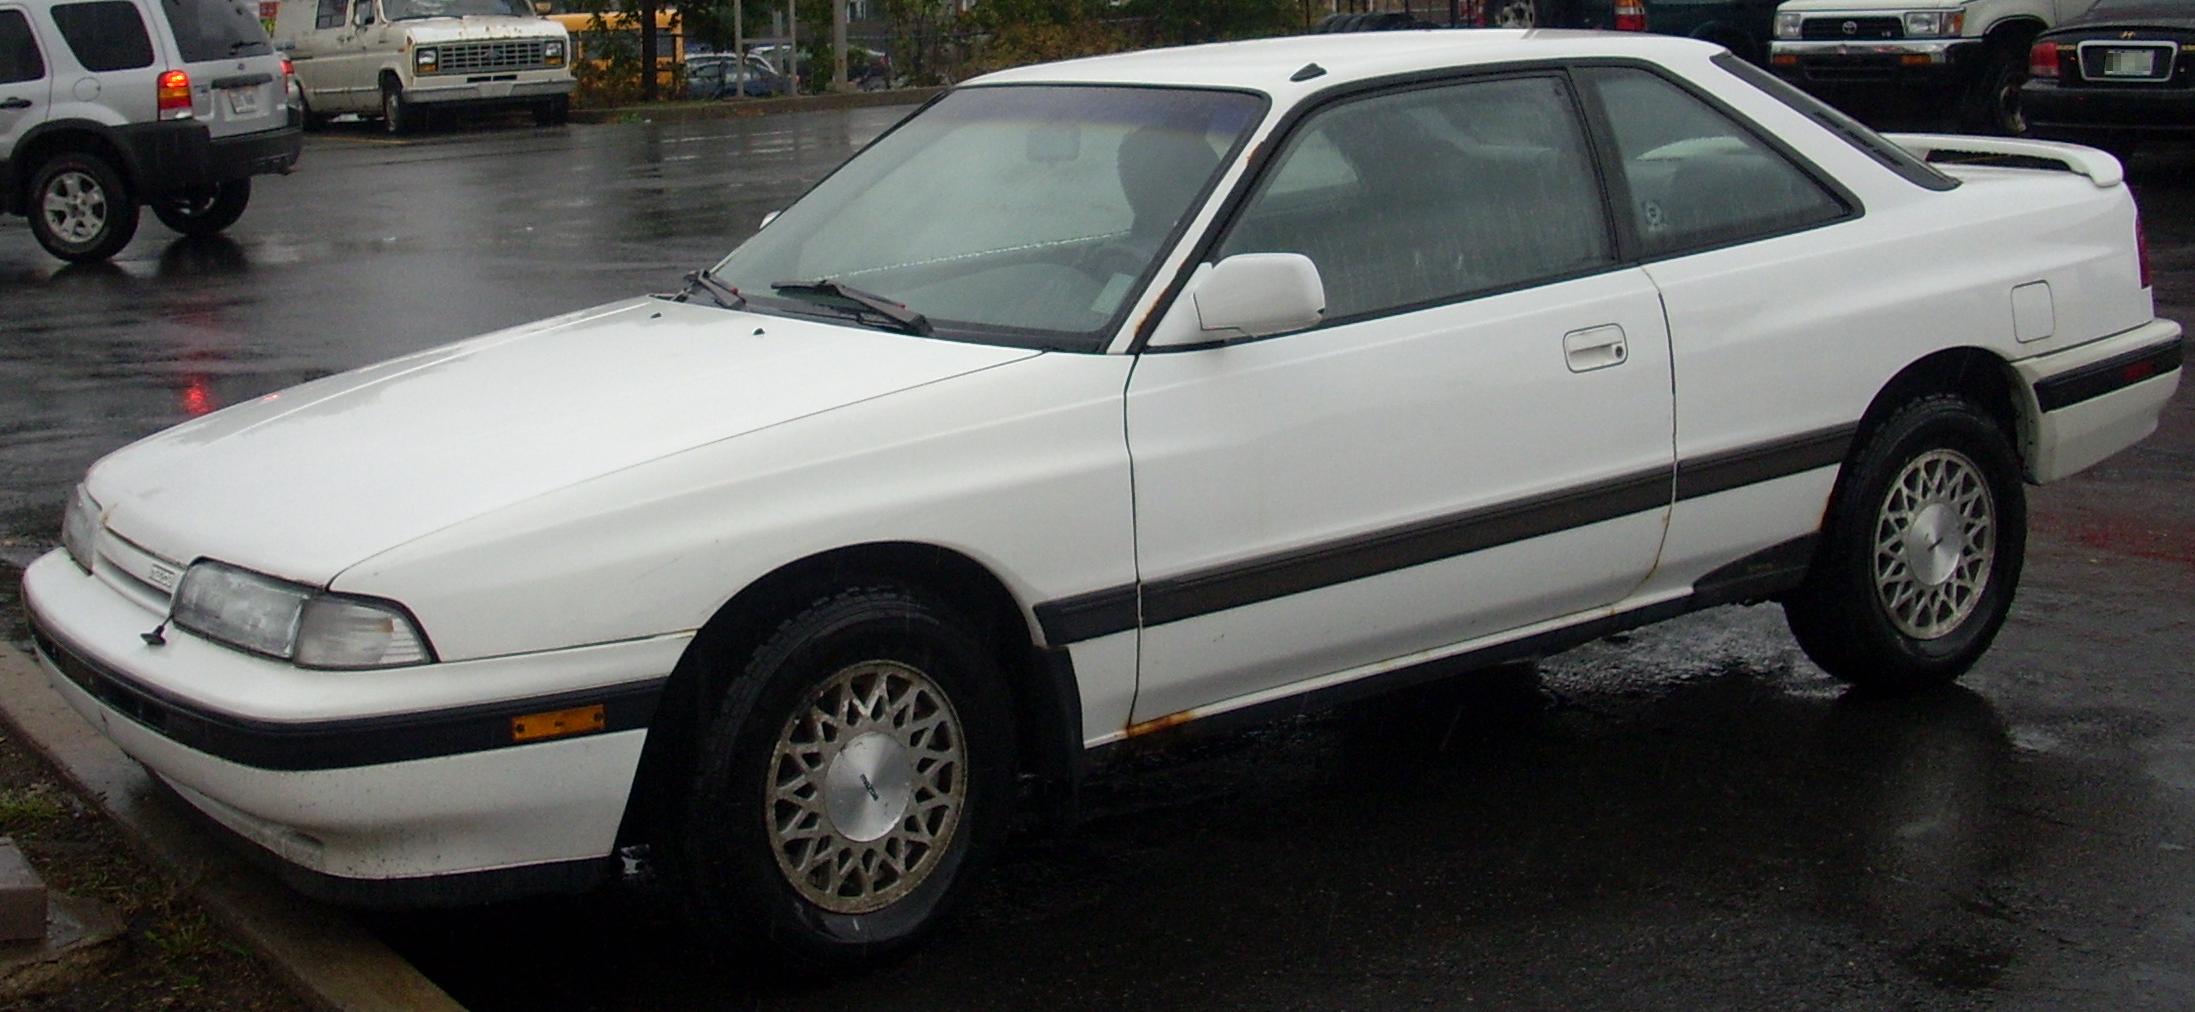 Mazda autozam 1991 photo - 3